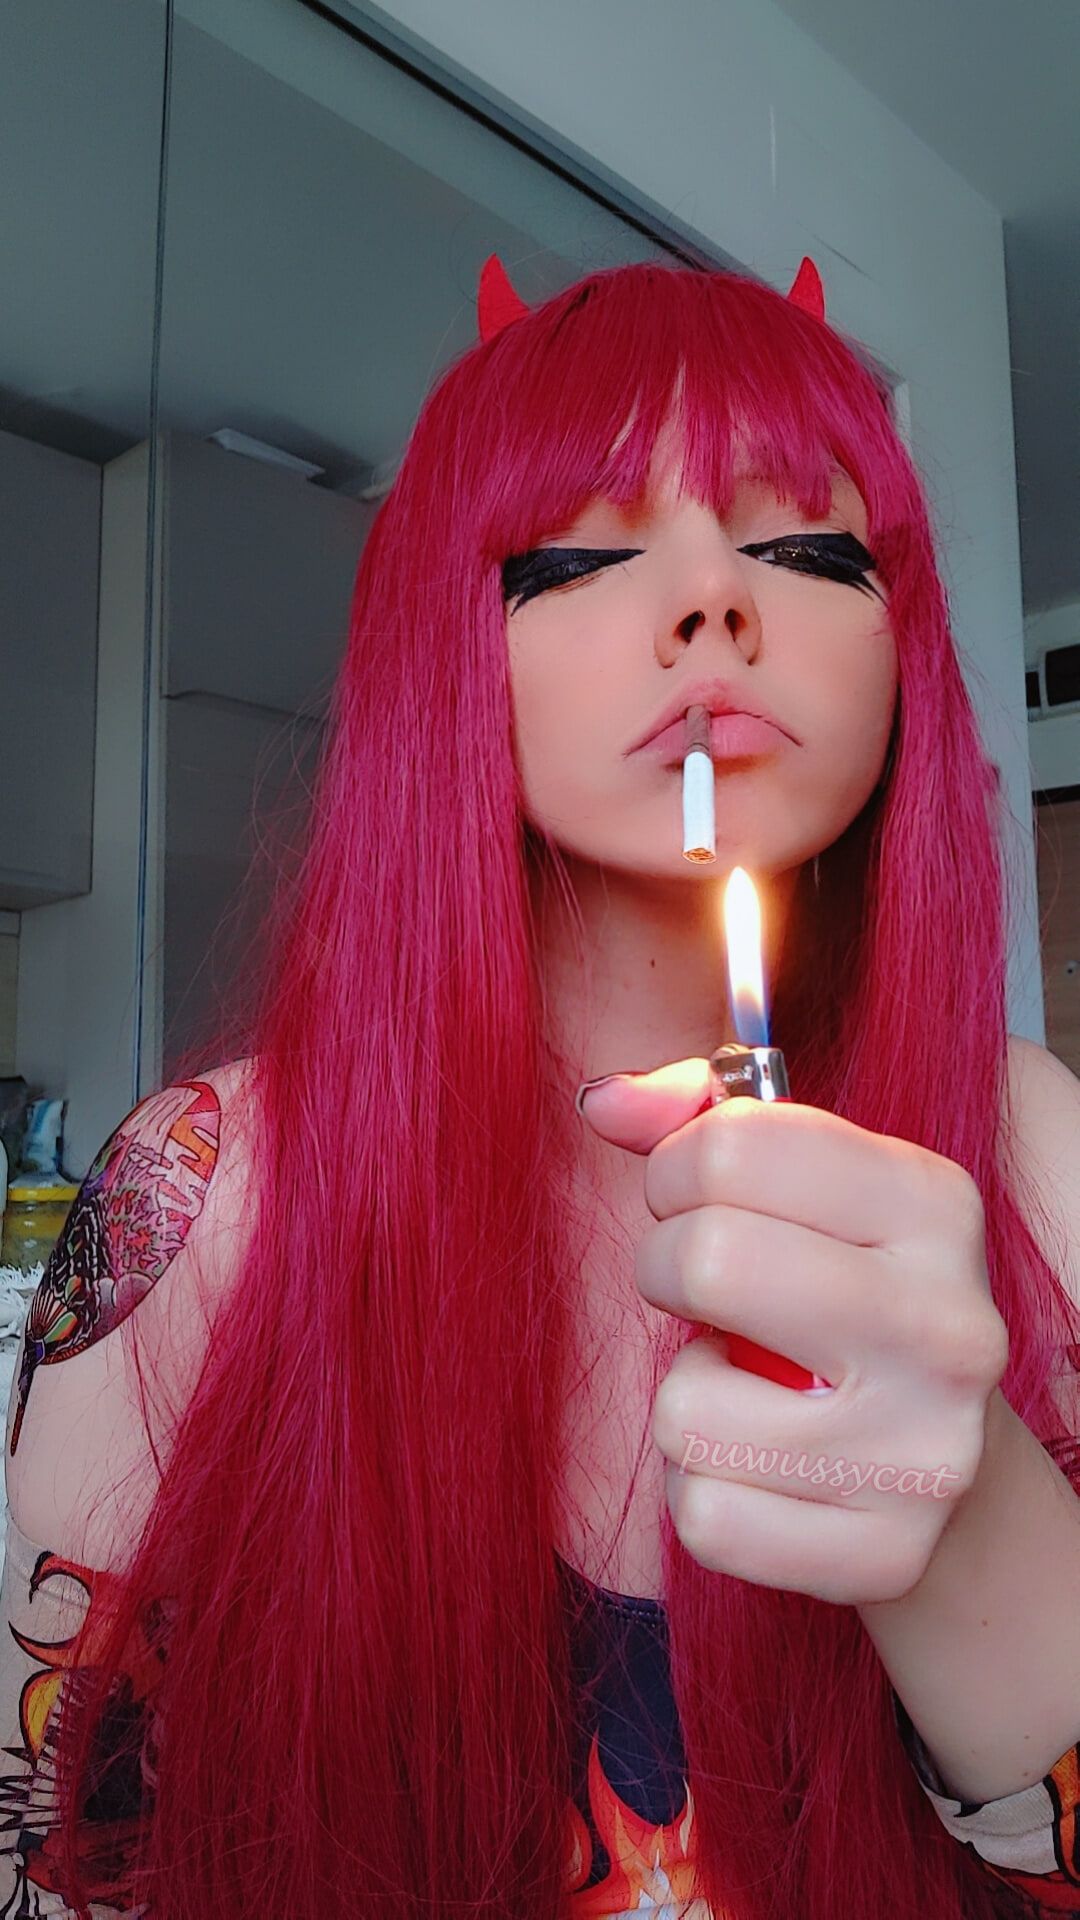 Goth Metal Girl Smoking